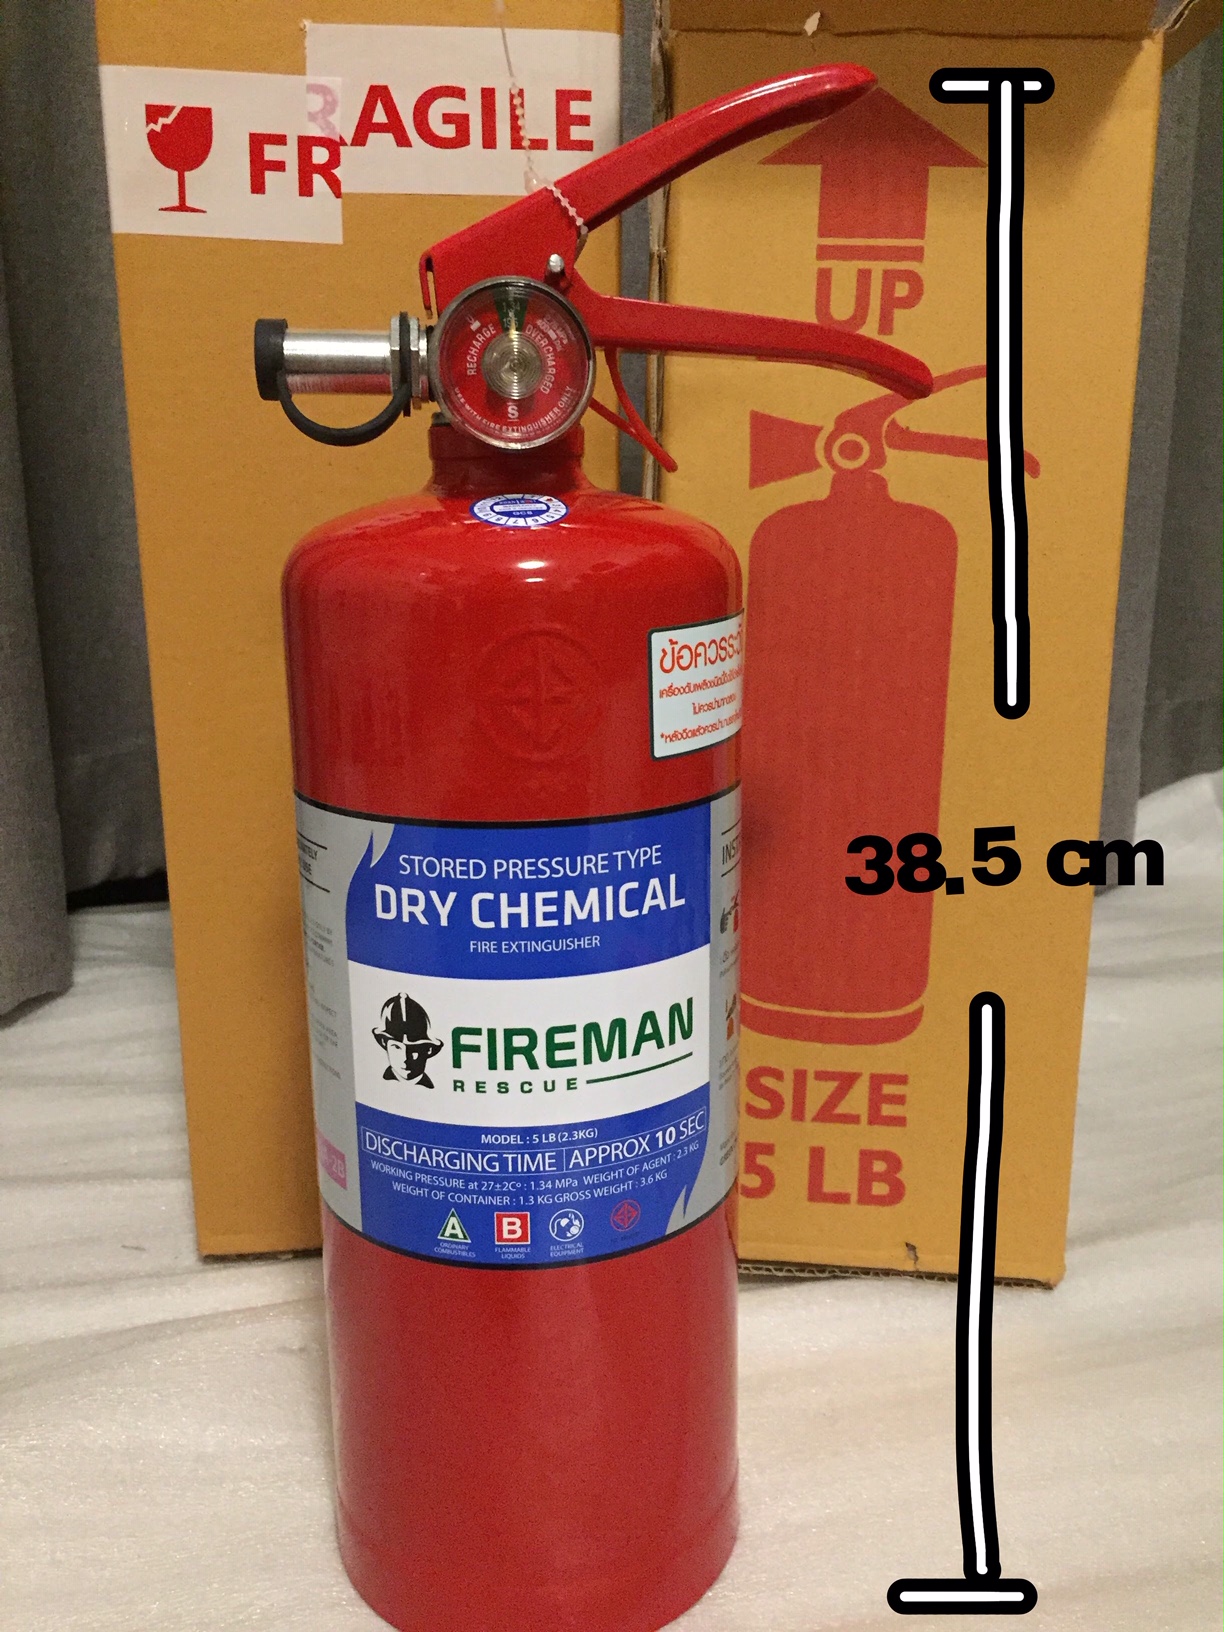 ถังดับเพลิงชนิดผงเคมีแห้ง ขนาด 5 ปอนด์ Fire Extinguisher